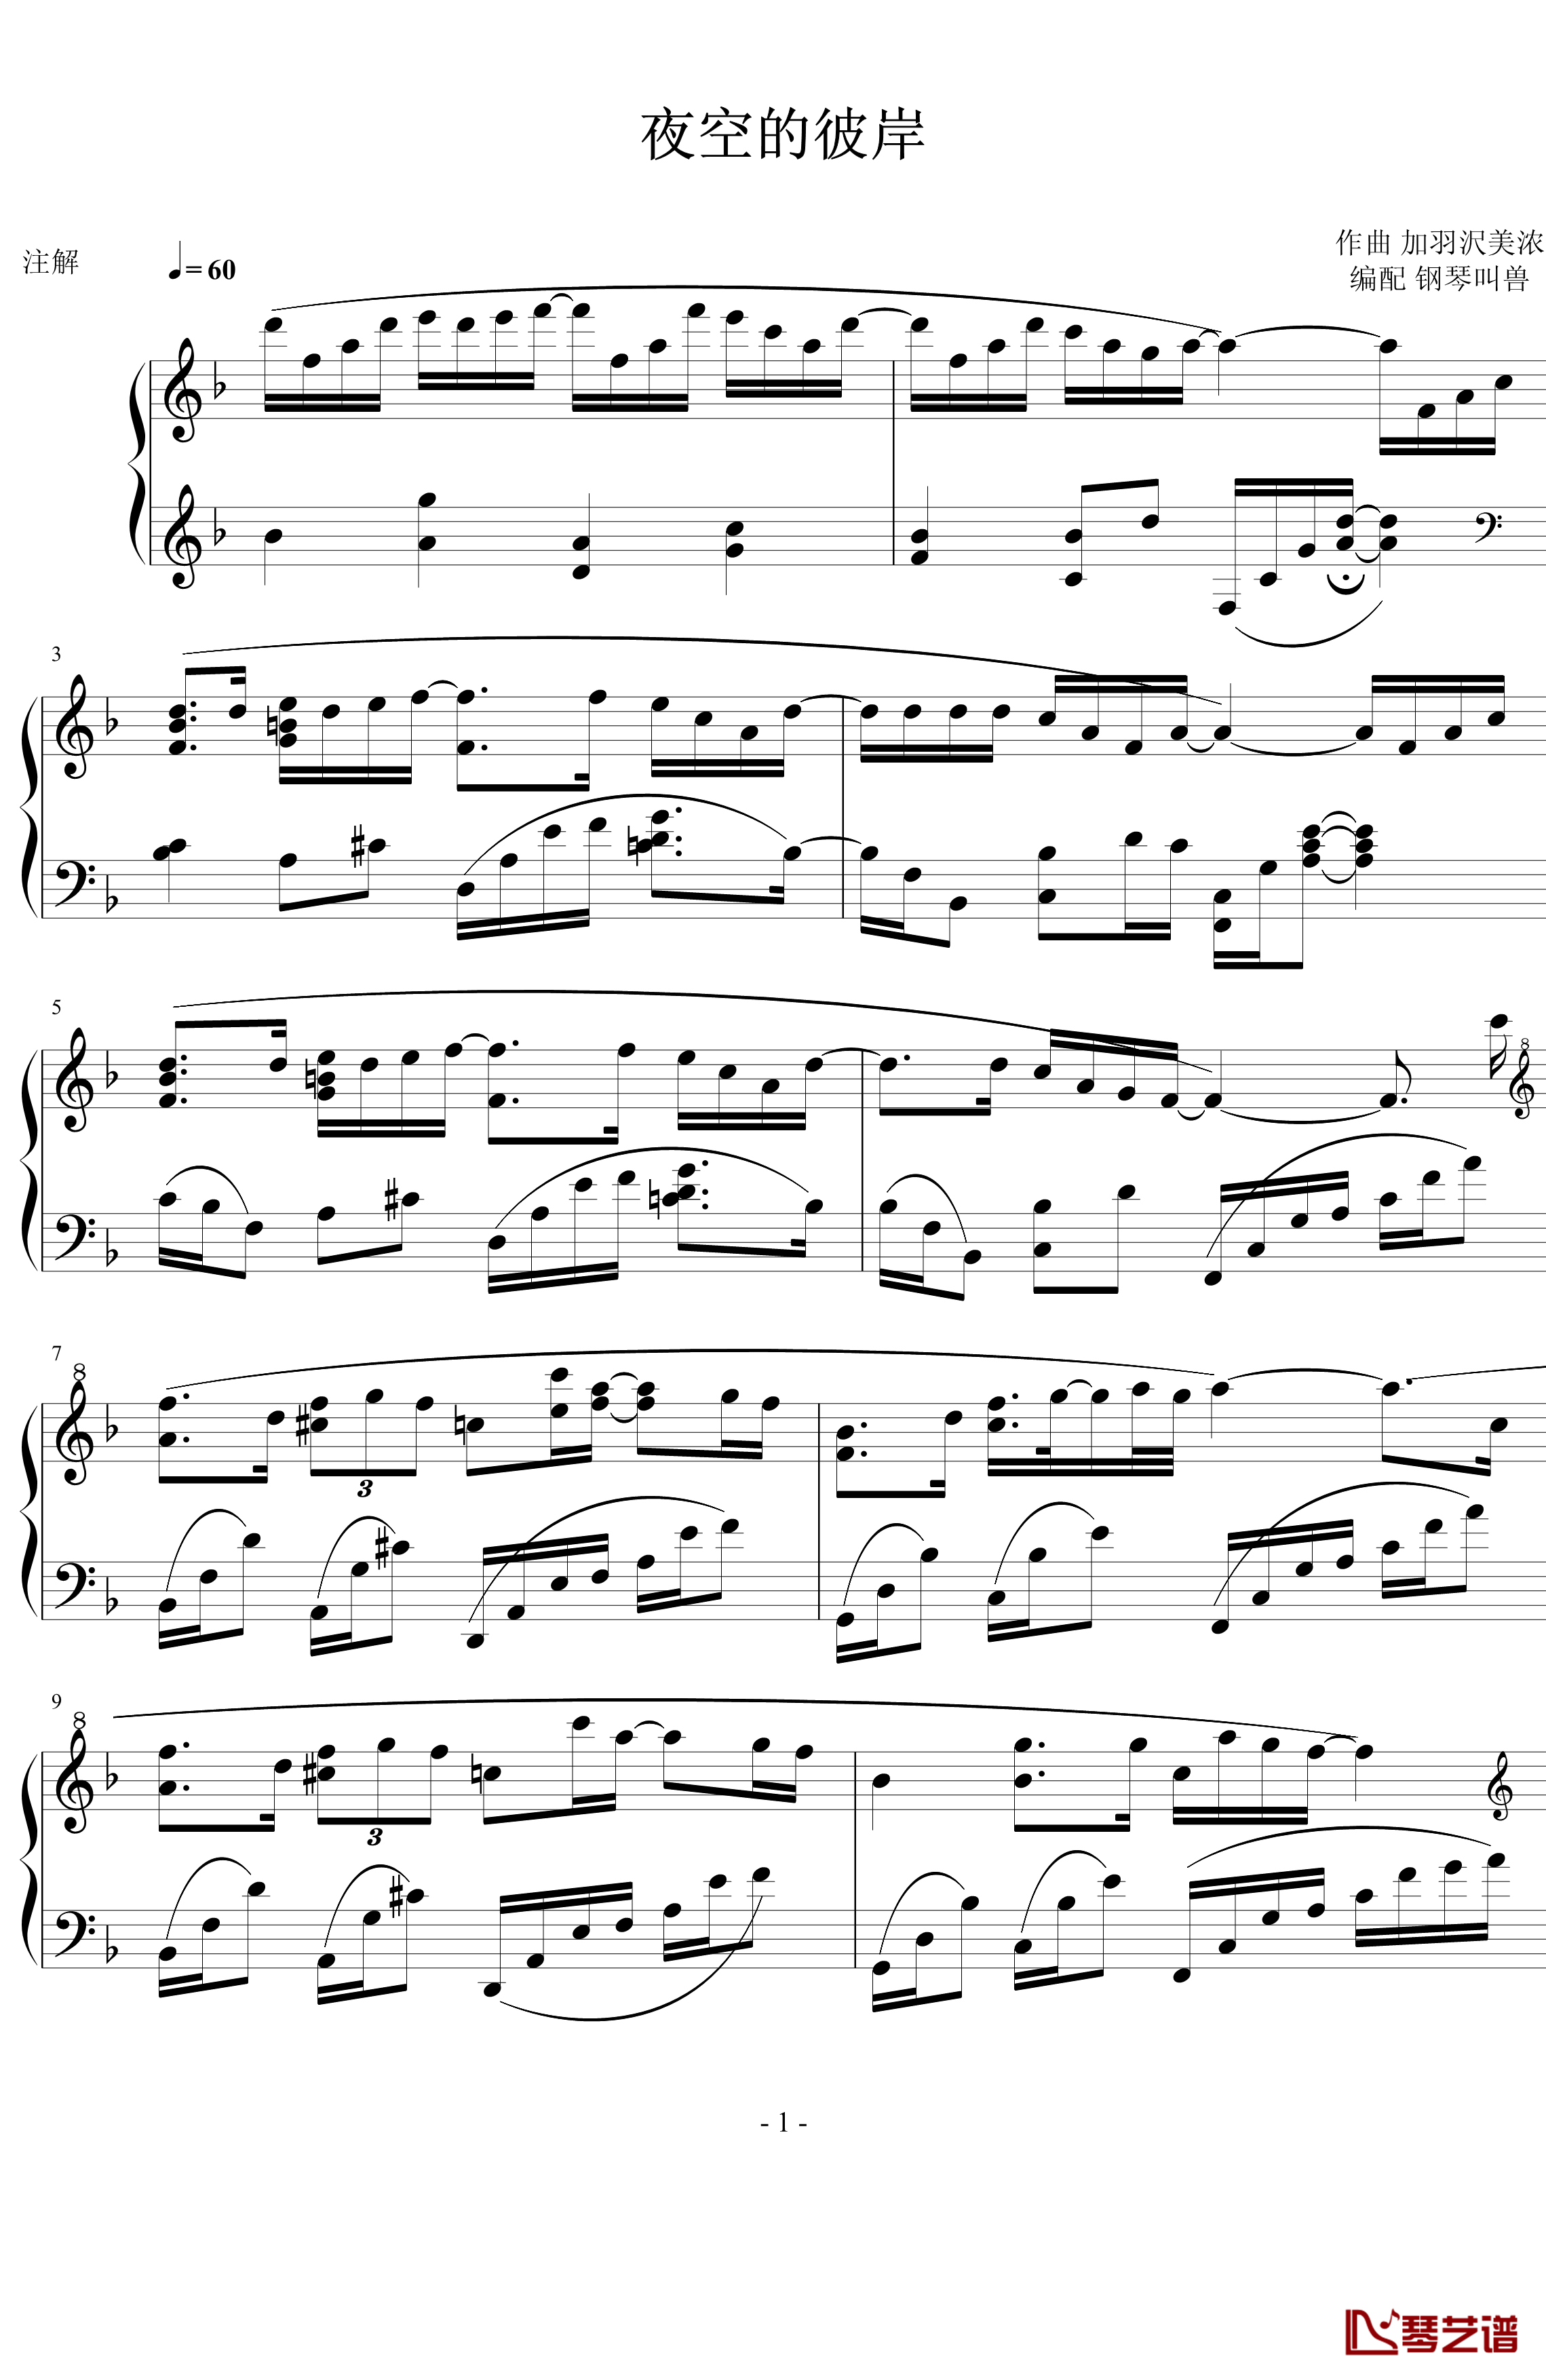 夜空的彼岸钢琴谱-第二次修正版-加羽沢美浓1